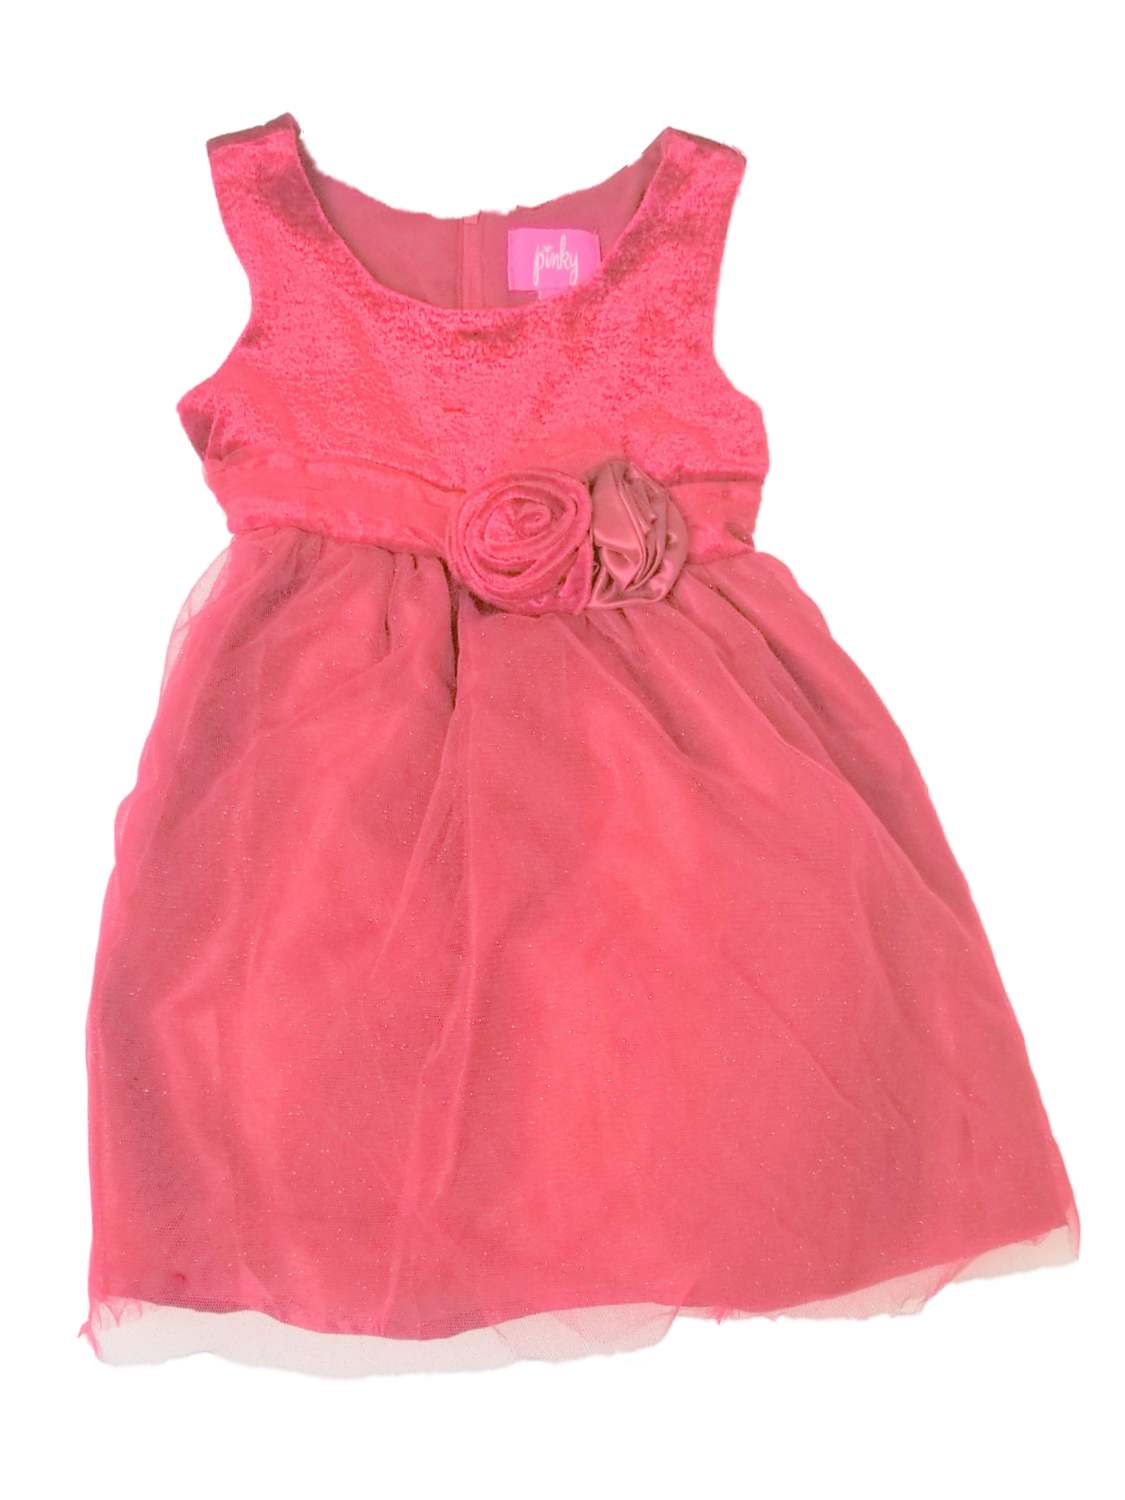 Pinky Infant Toddler Girls Red Velvet Christmas Holiday Party Dress Tulle Glitter 18M